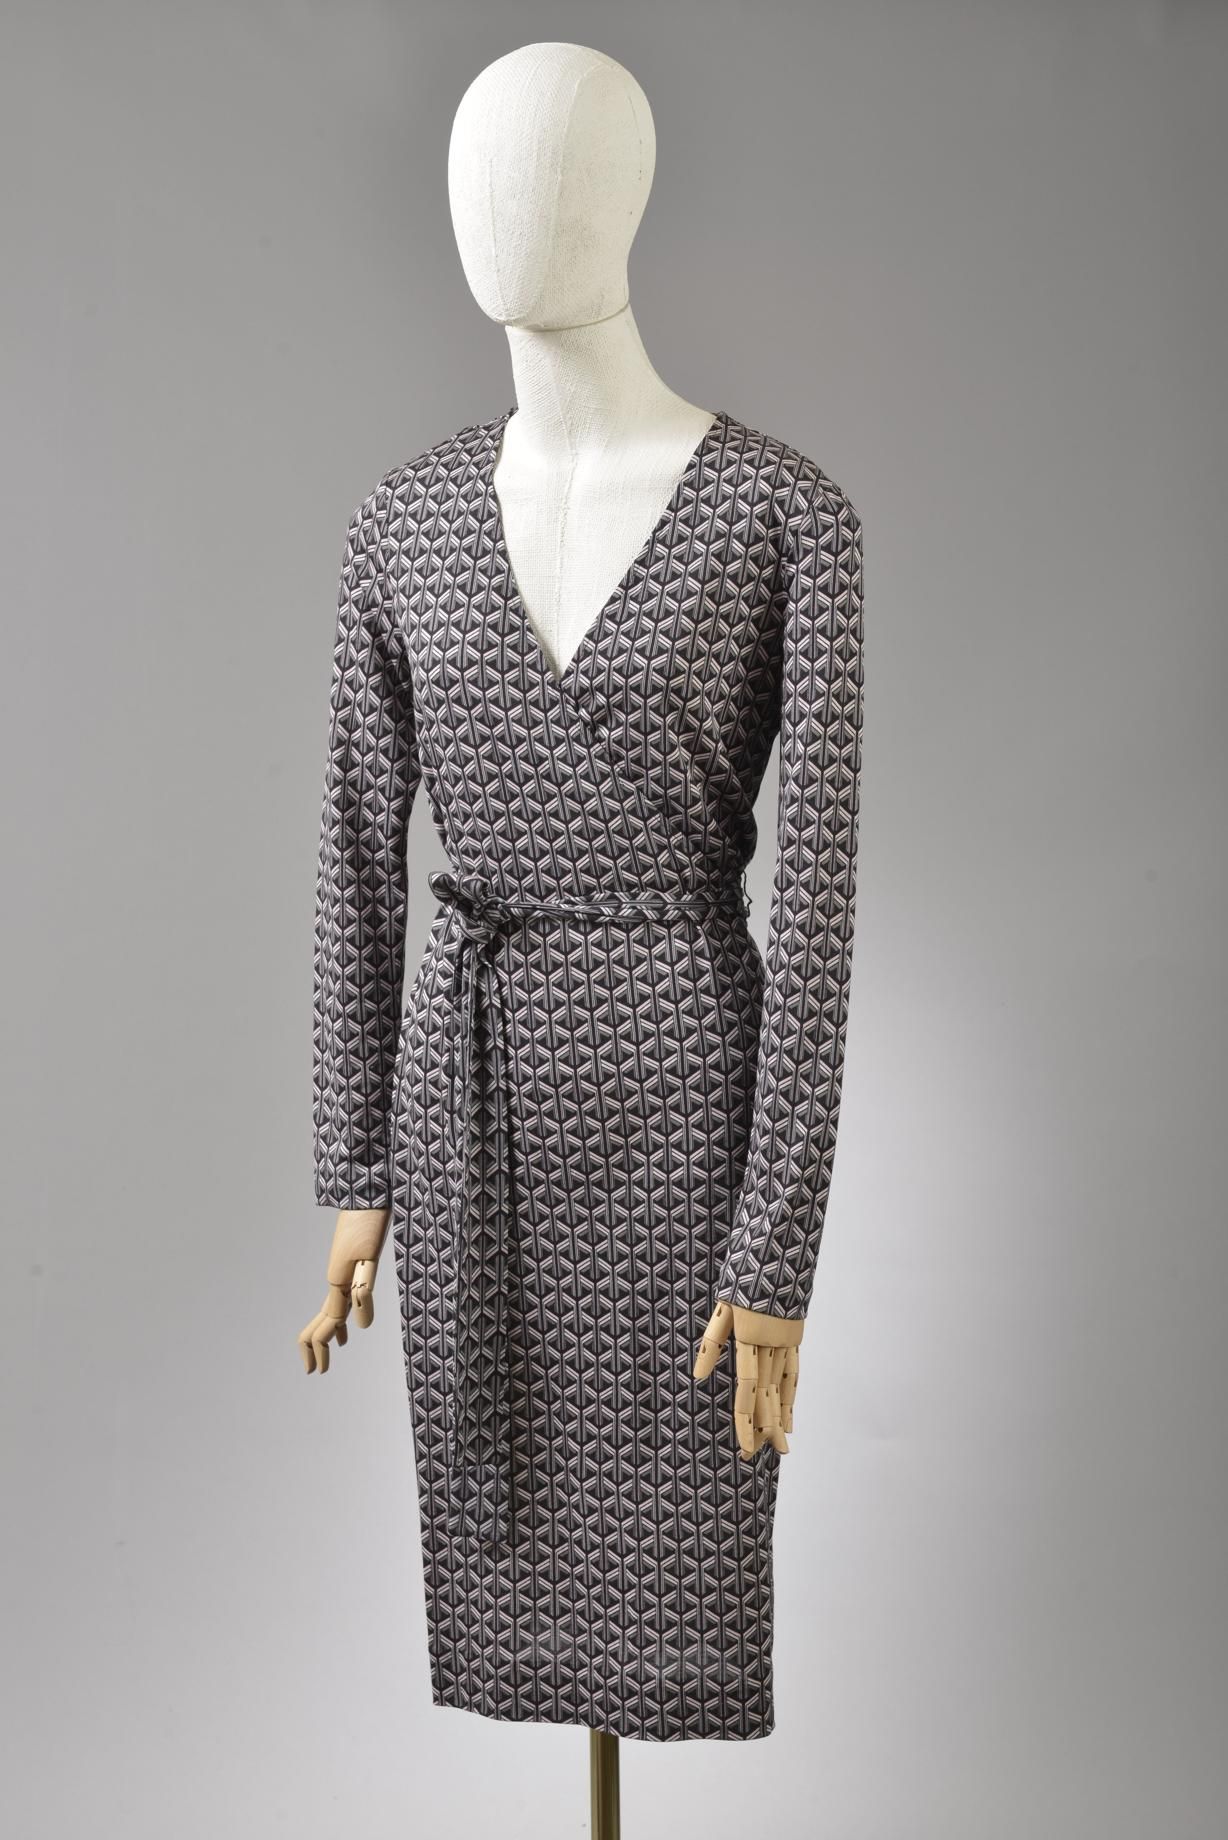 Null *尺寸6 DVF - Diane Von Fürstenberg

套装包括。

-丝质雪纺上衣，型号为 "DVF Minnie"，黑色背景上印有 "&hellip;